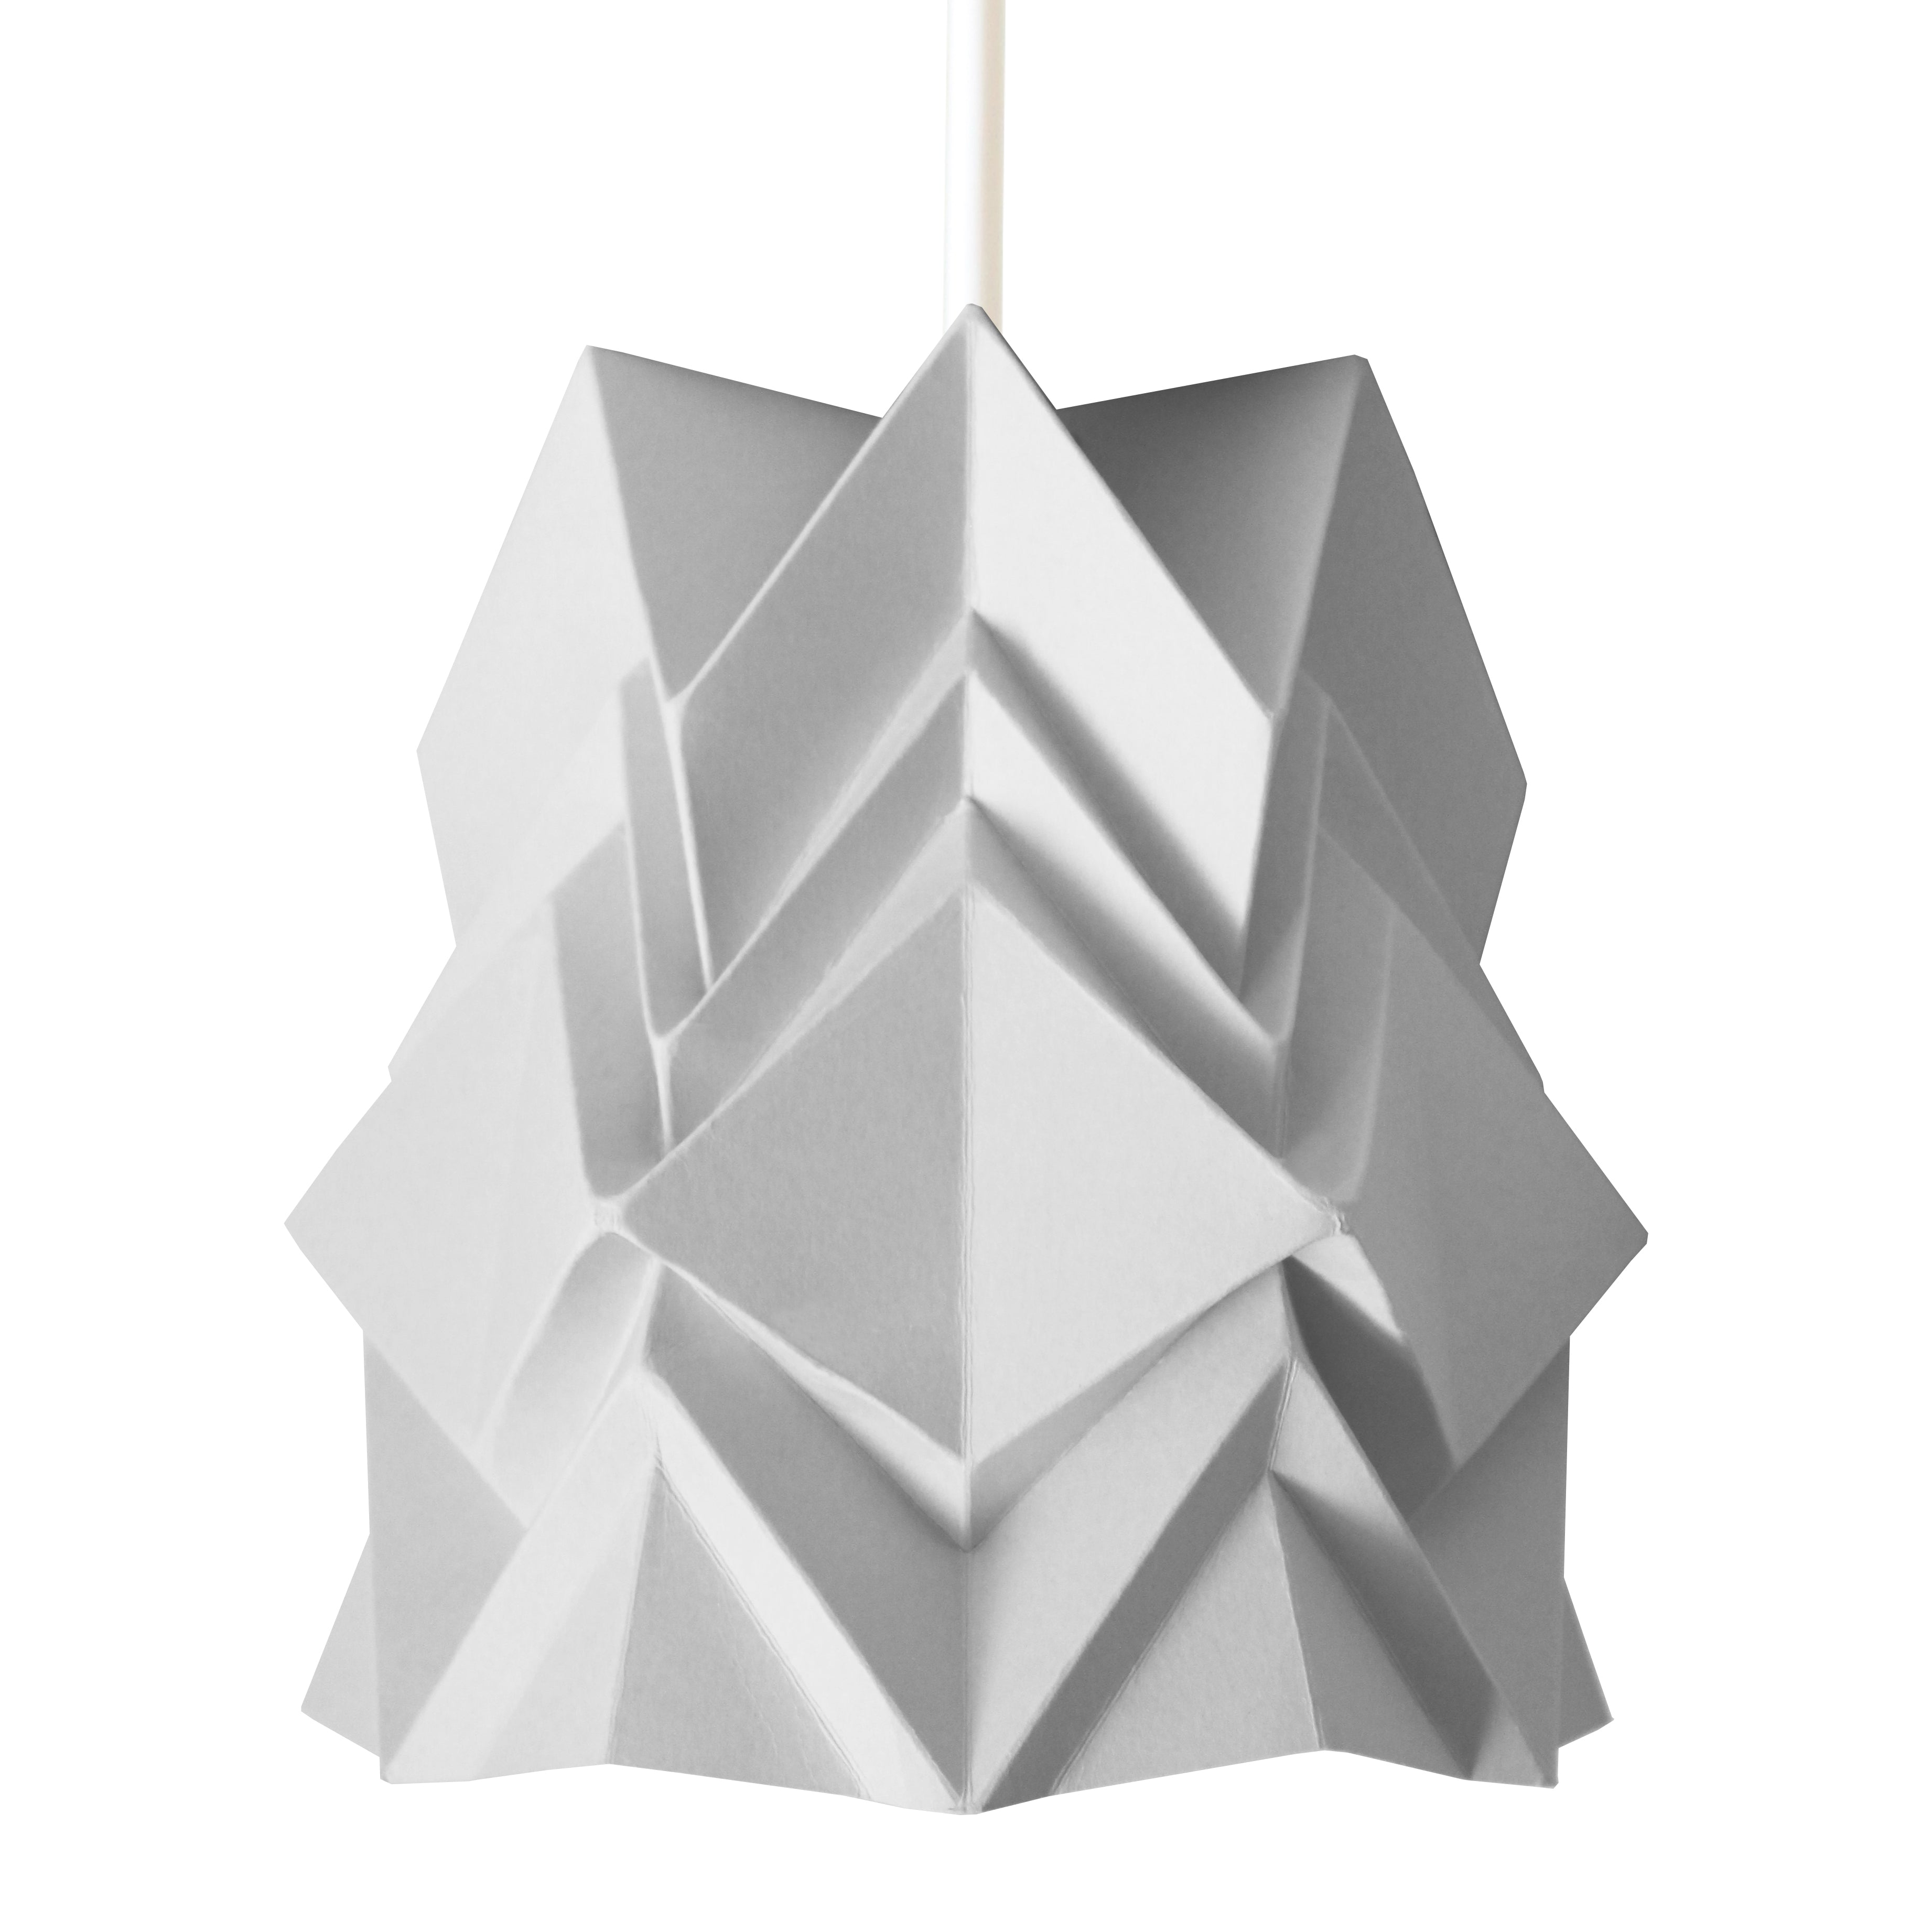 Petite suspension origami design